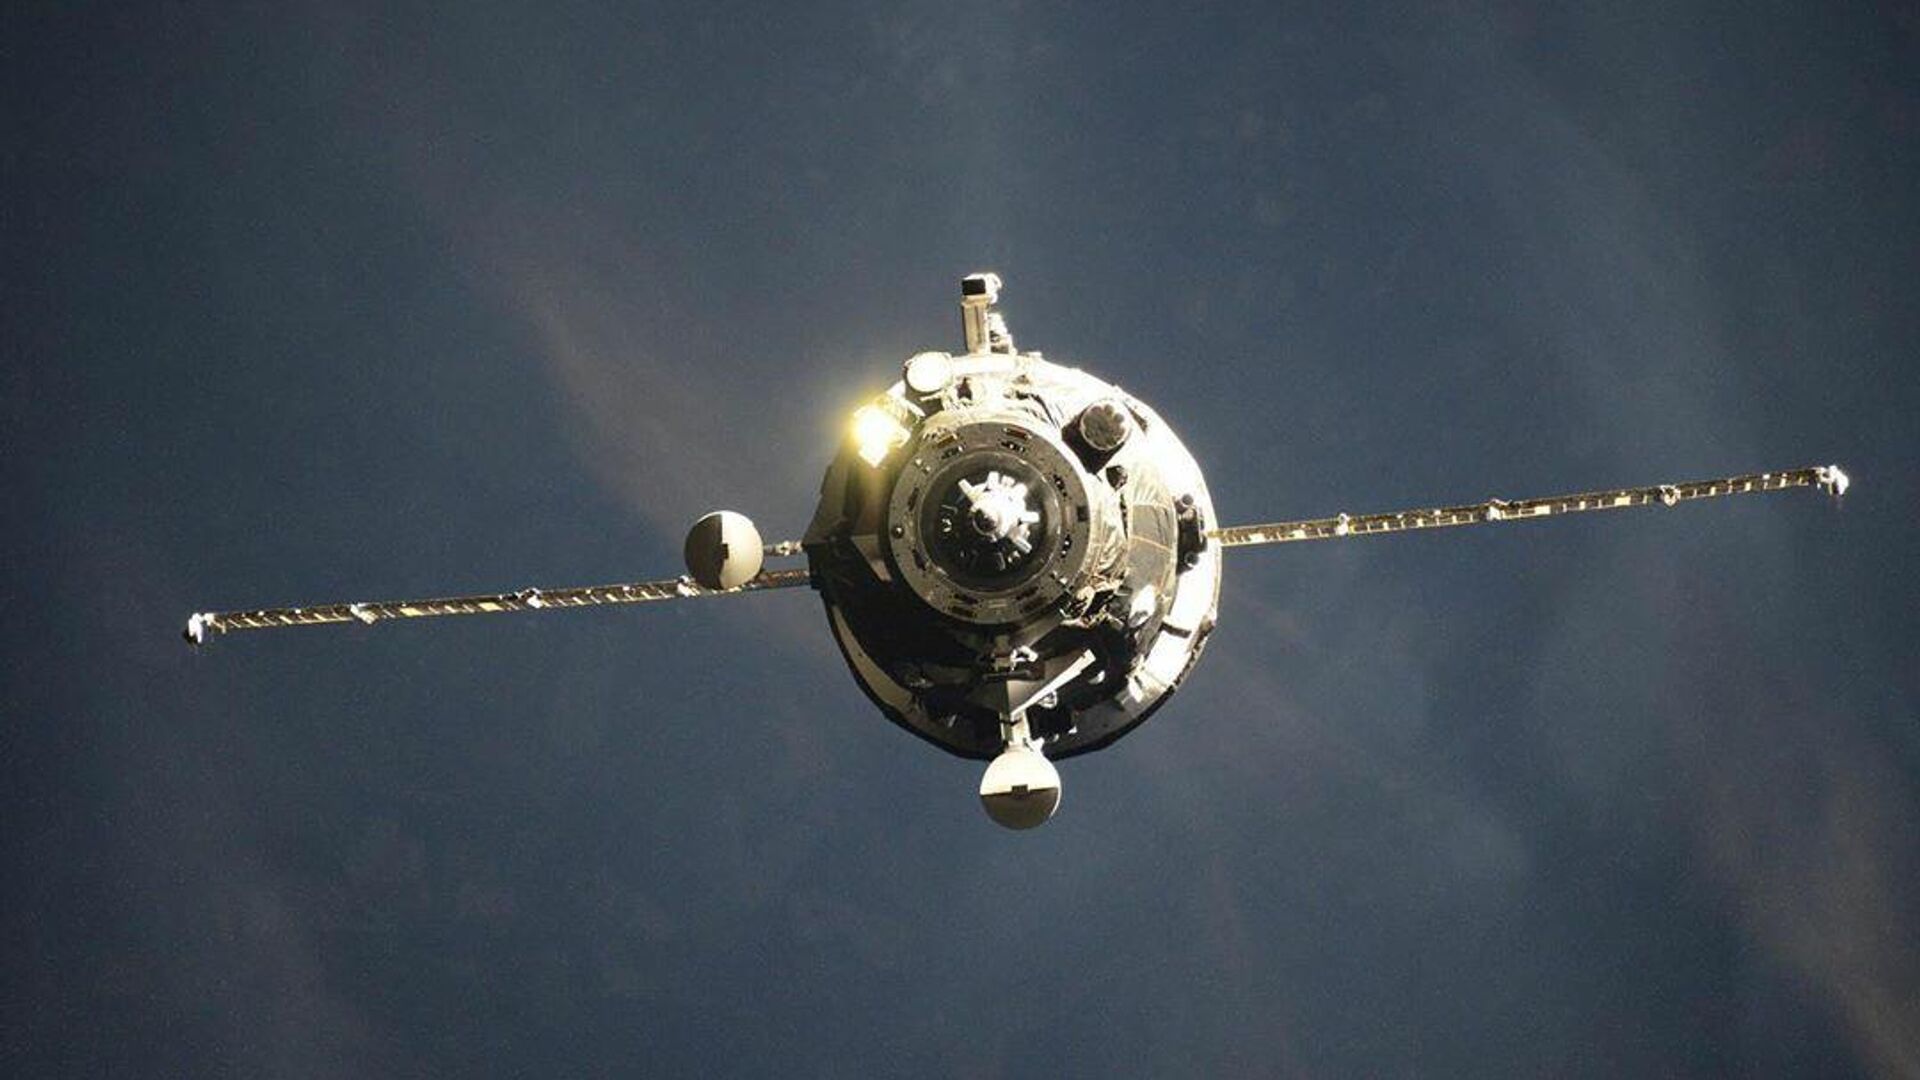 Корабль Crew Dragon с астронавтами отстыковался от МКС и полетел к Земле